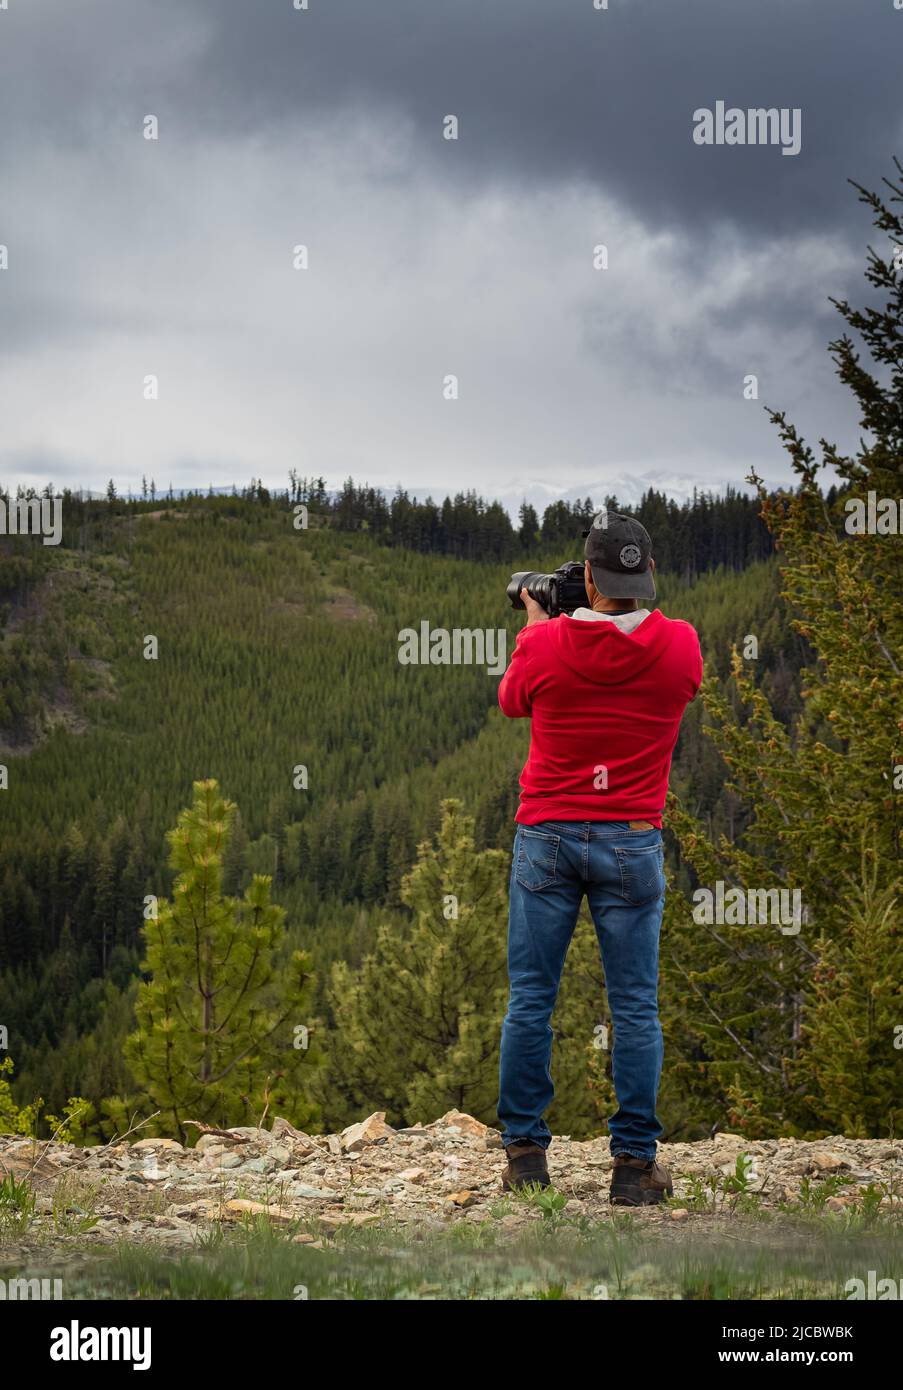 Ein Fotograf, der mit einer Digitalkamera in einem Gebirge fotografiert. Reise- und Active Lifestyle-Konzept. Kreative professionelle Fotografie. Phot Stockfoto